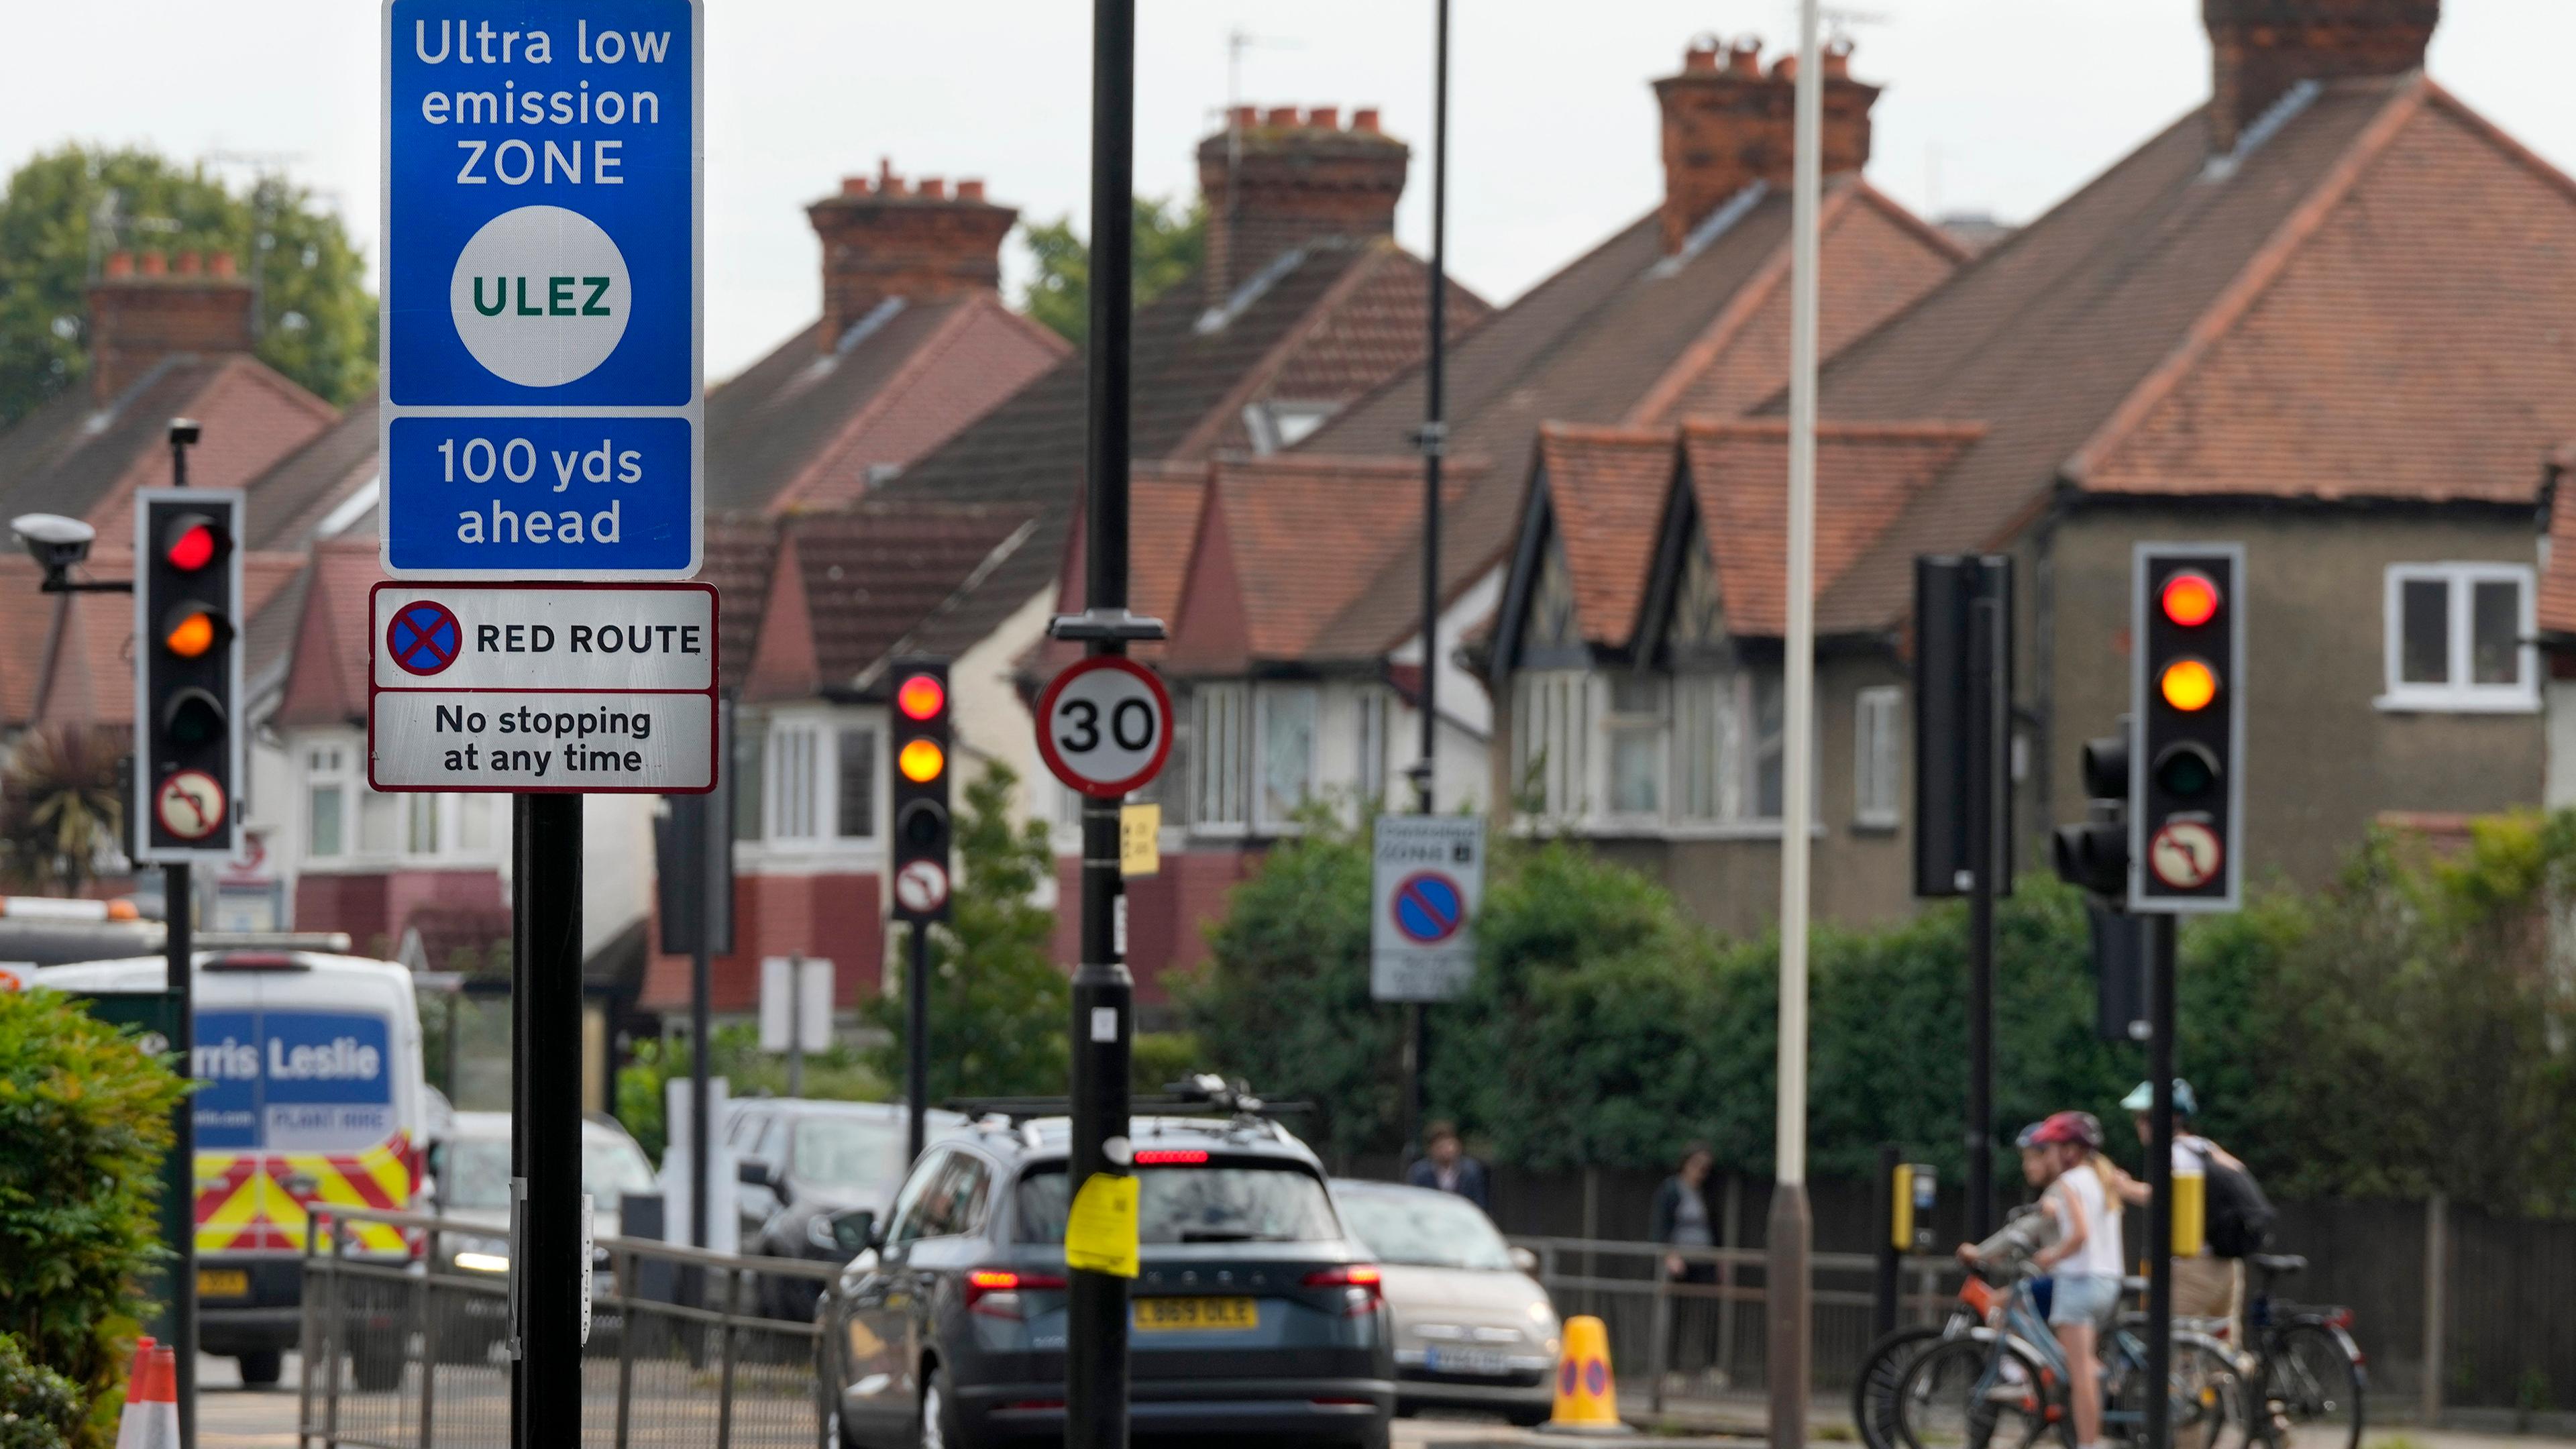 Großbritannien, London: Ein Straßenschild markiert den Beginn der Ultra Low Emission Zone (ULEZ).